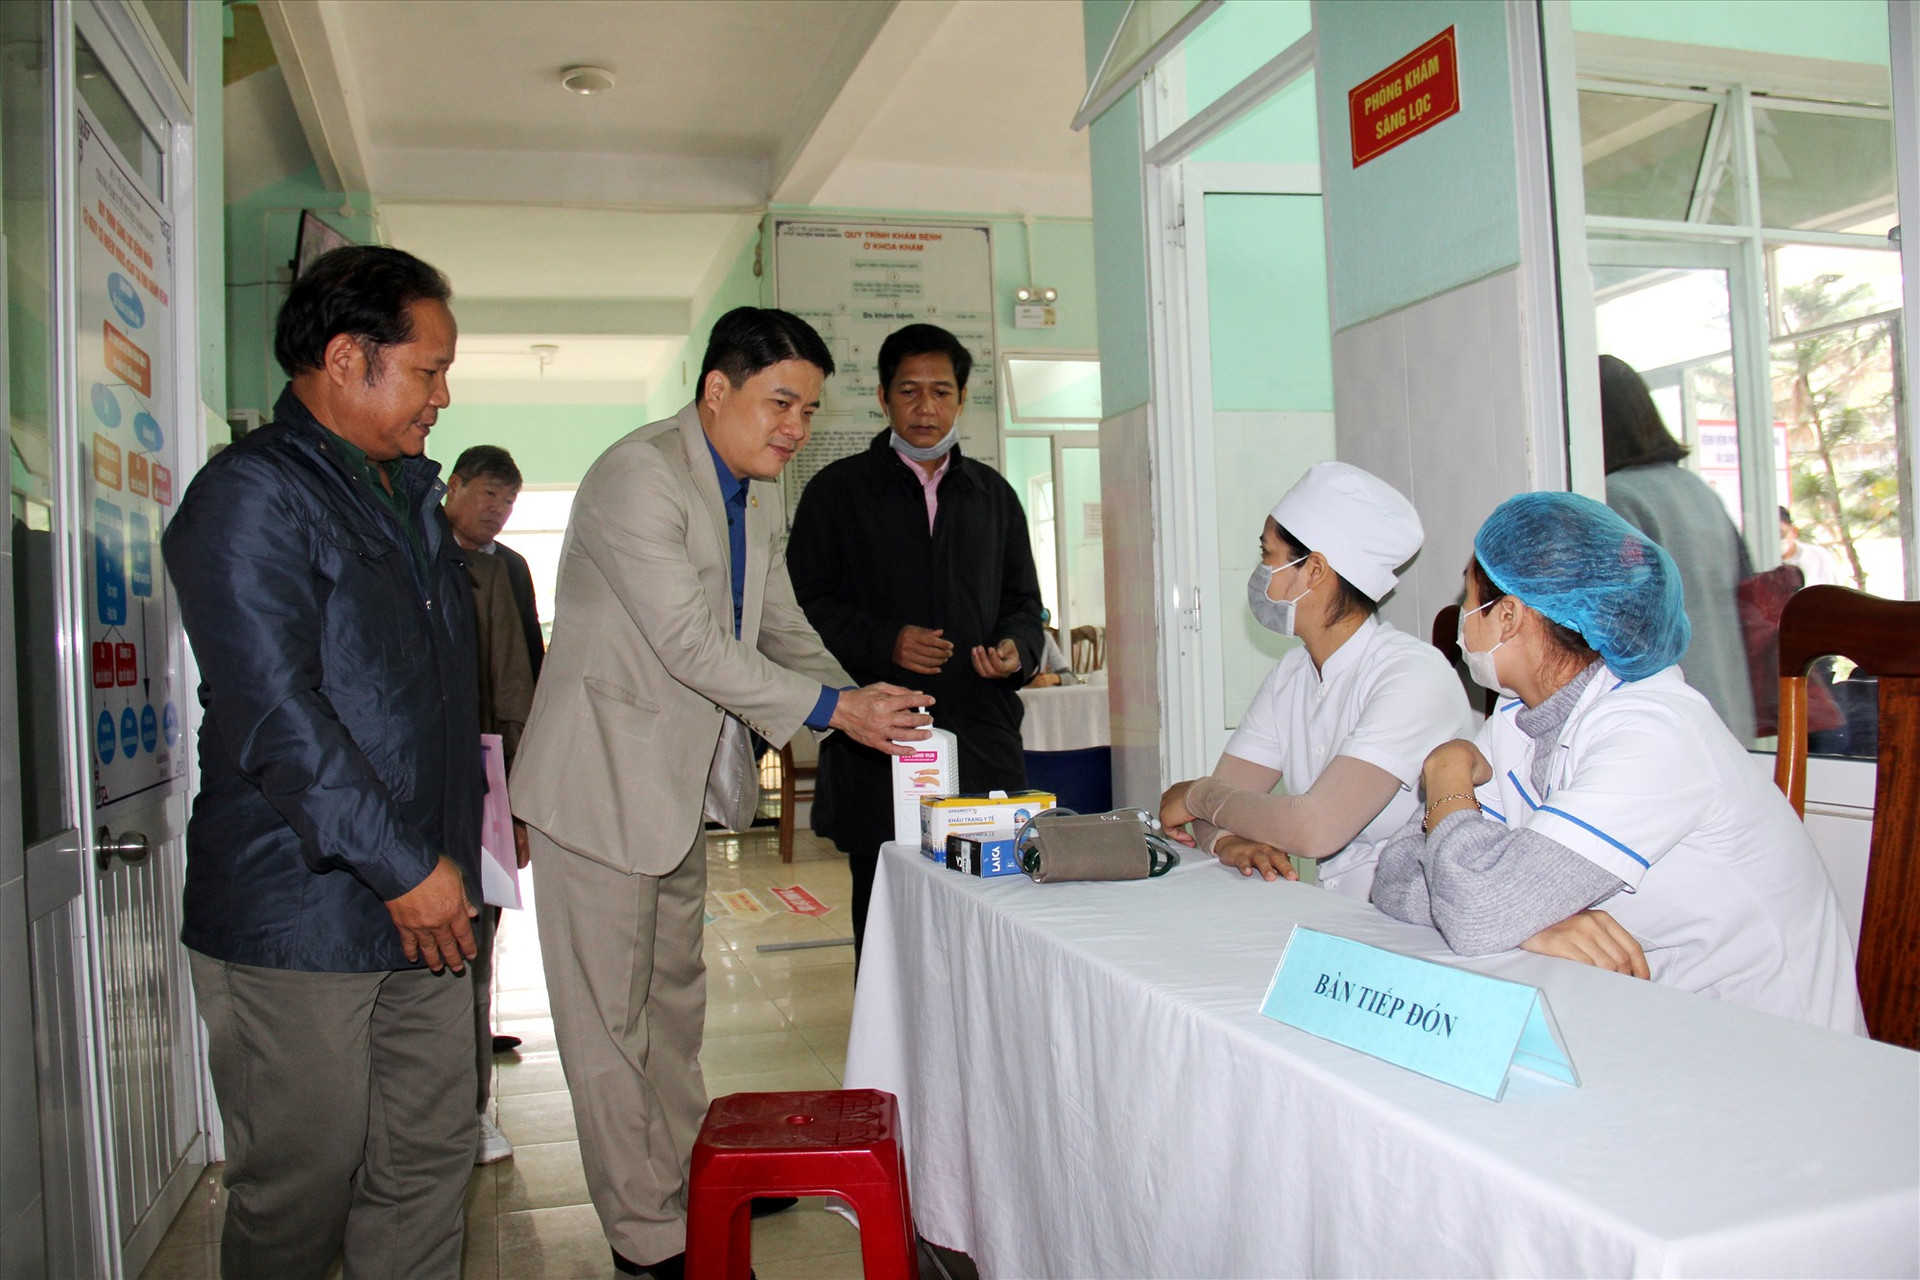 Trước khi nghe báo cáo từ chính quyền địa phương, Phó Chủ tịch UBND tỉnh Trần Văn Tân đã có chuyến kiểm tra thực tế công tác chuẩn bị các điều kiện cơ sở vật chất, phương án ứng phó của địa phương về dịch Covid-19. Ảnh: A.N